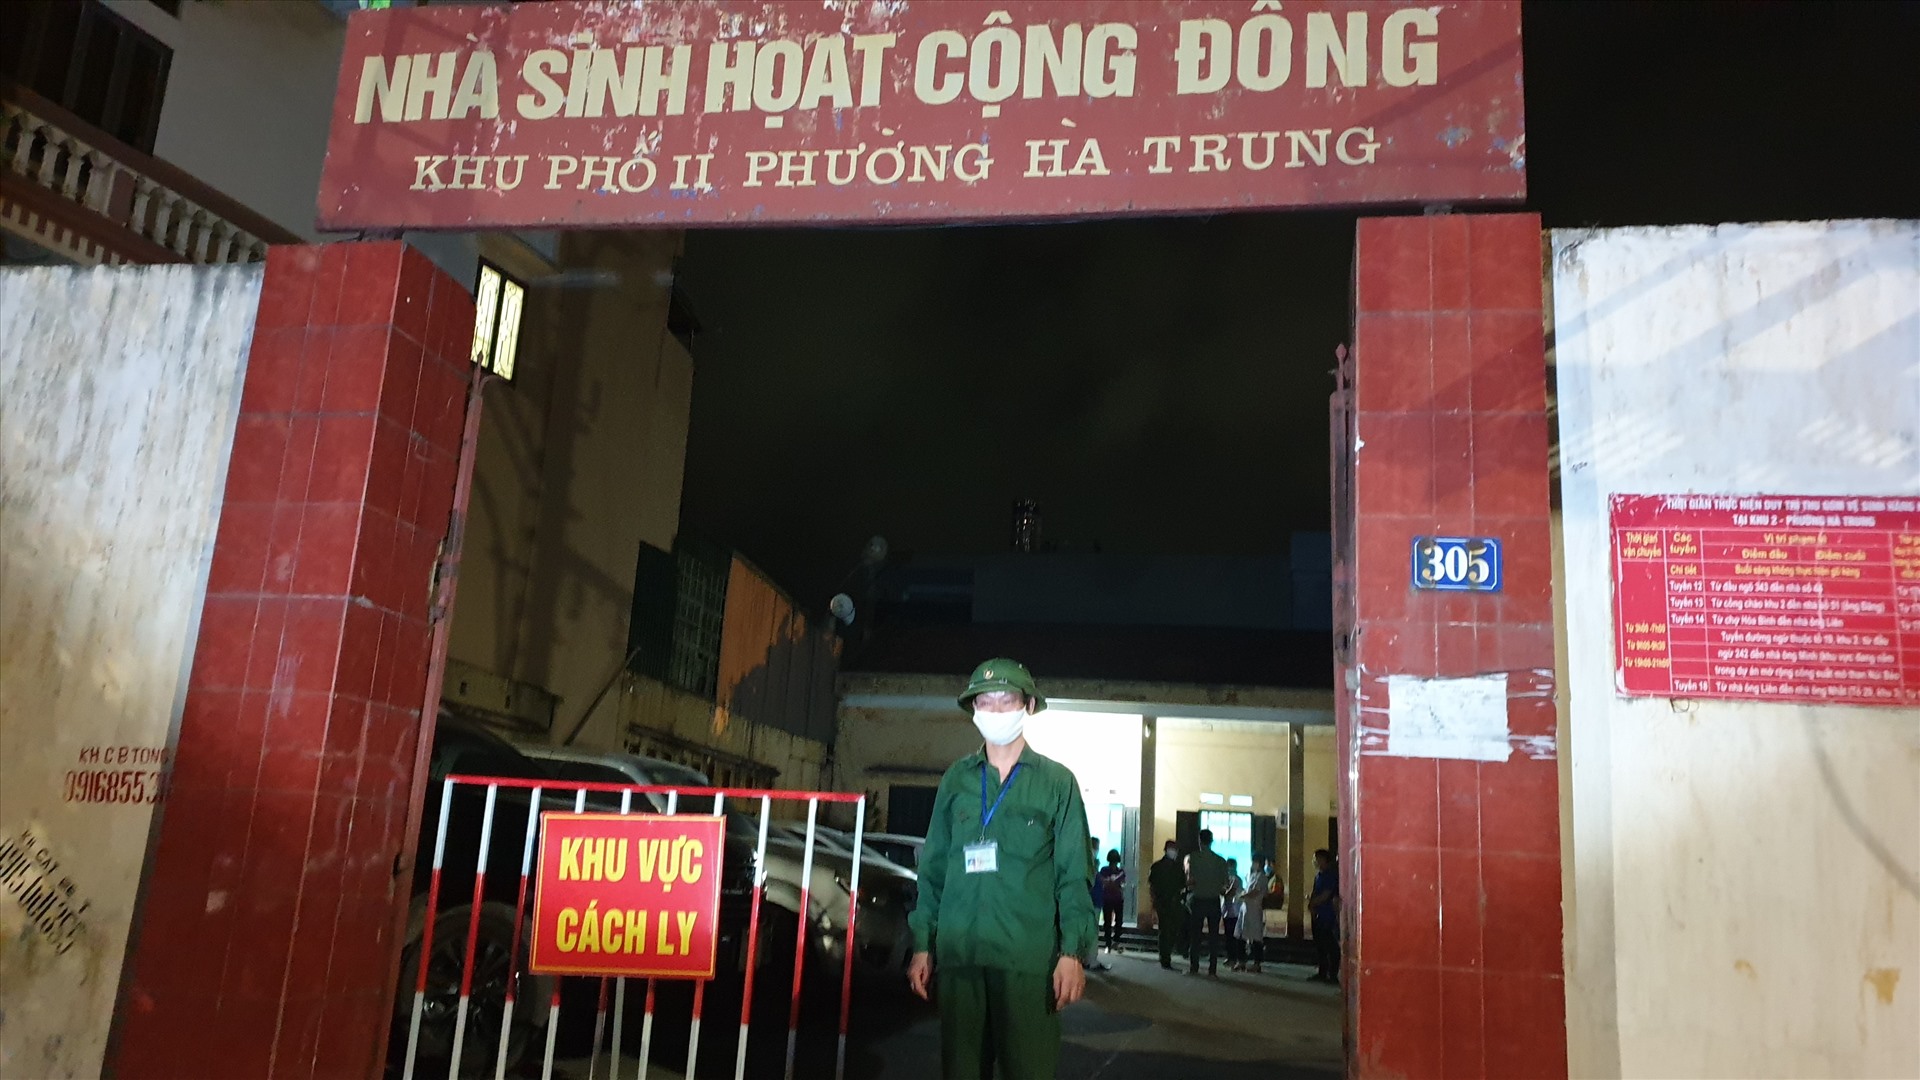 Một khu cách ly dành cho những người 22h vẫn ra đường mà không có lý do chính đáng tại phường Hà Trung. Ảnh: Nguyễn Hùng